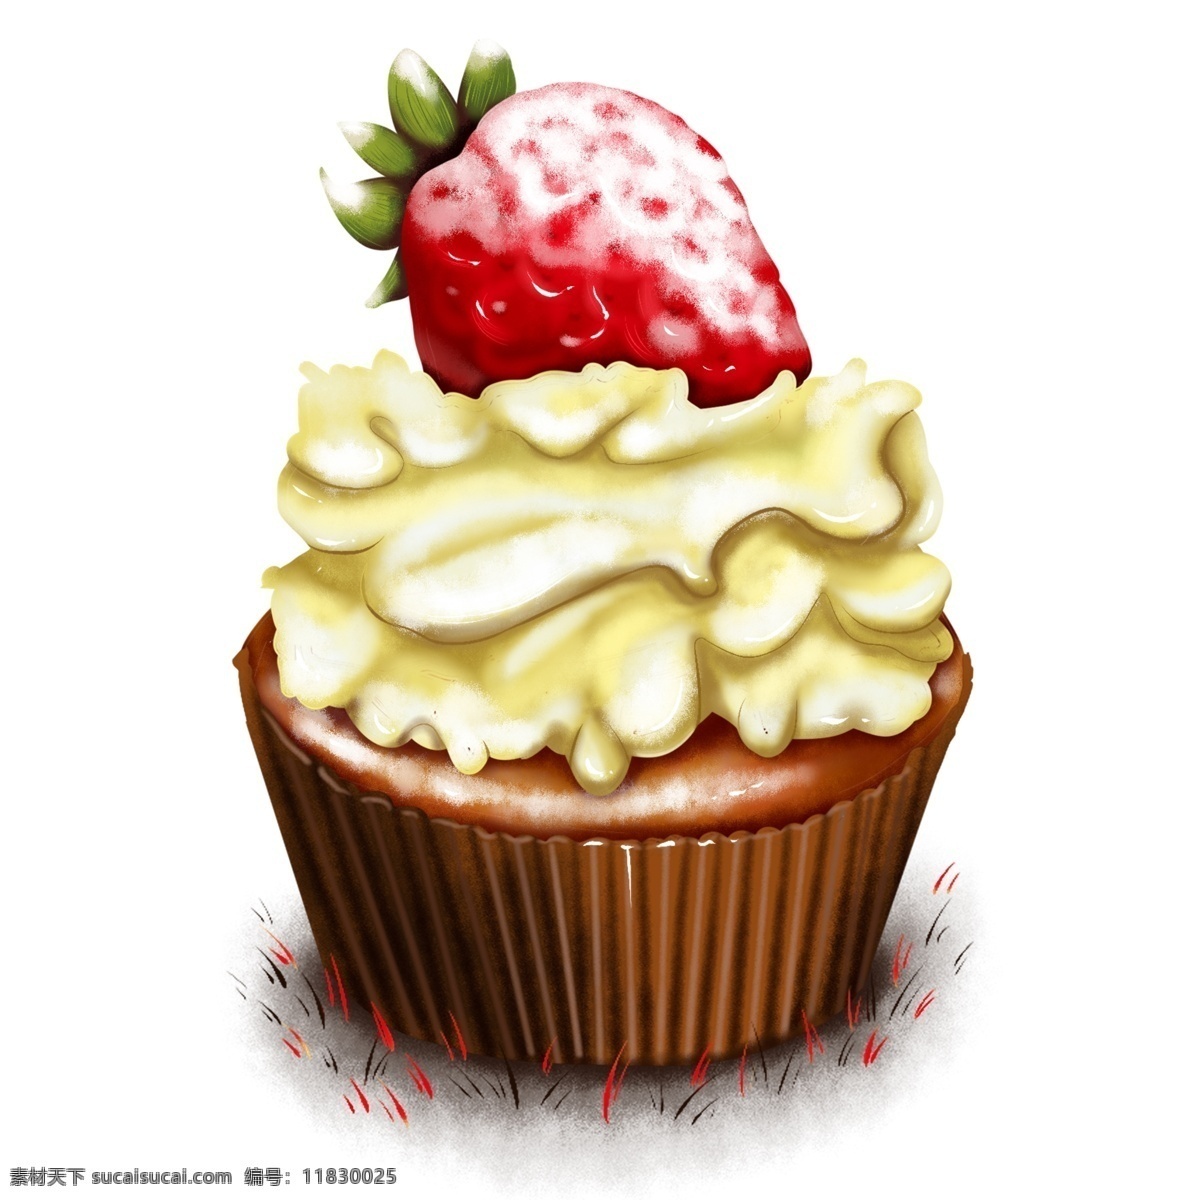 原创 手绘 食物 黄 奶油 草莓 糖霜 咖啡 杯子 蛋糕 海报素材 商用 杯子蛋糕 元素